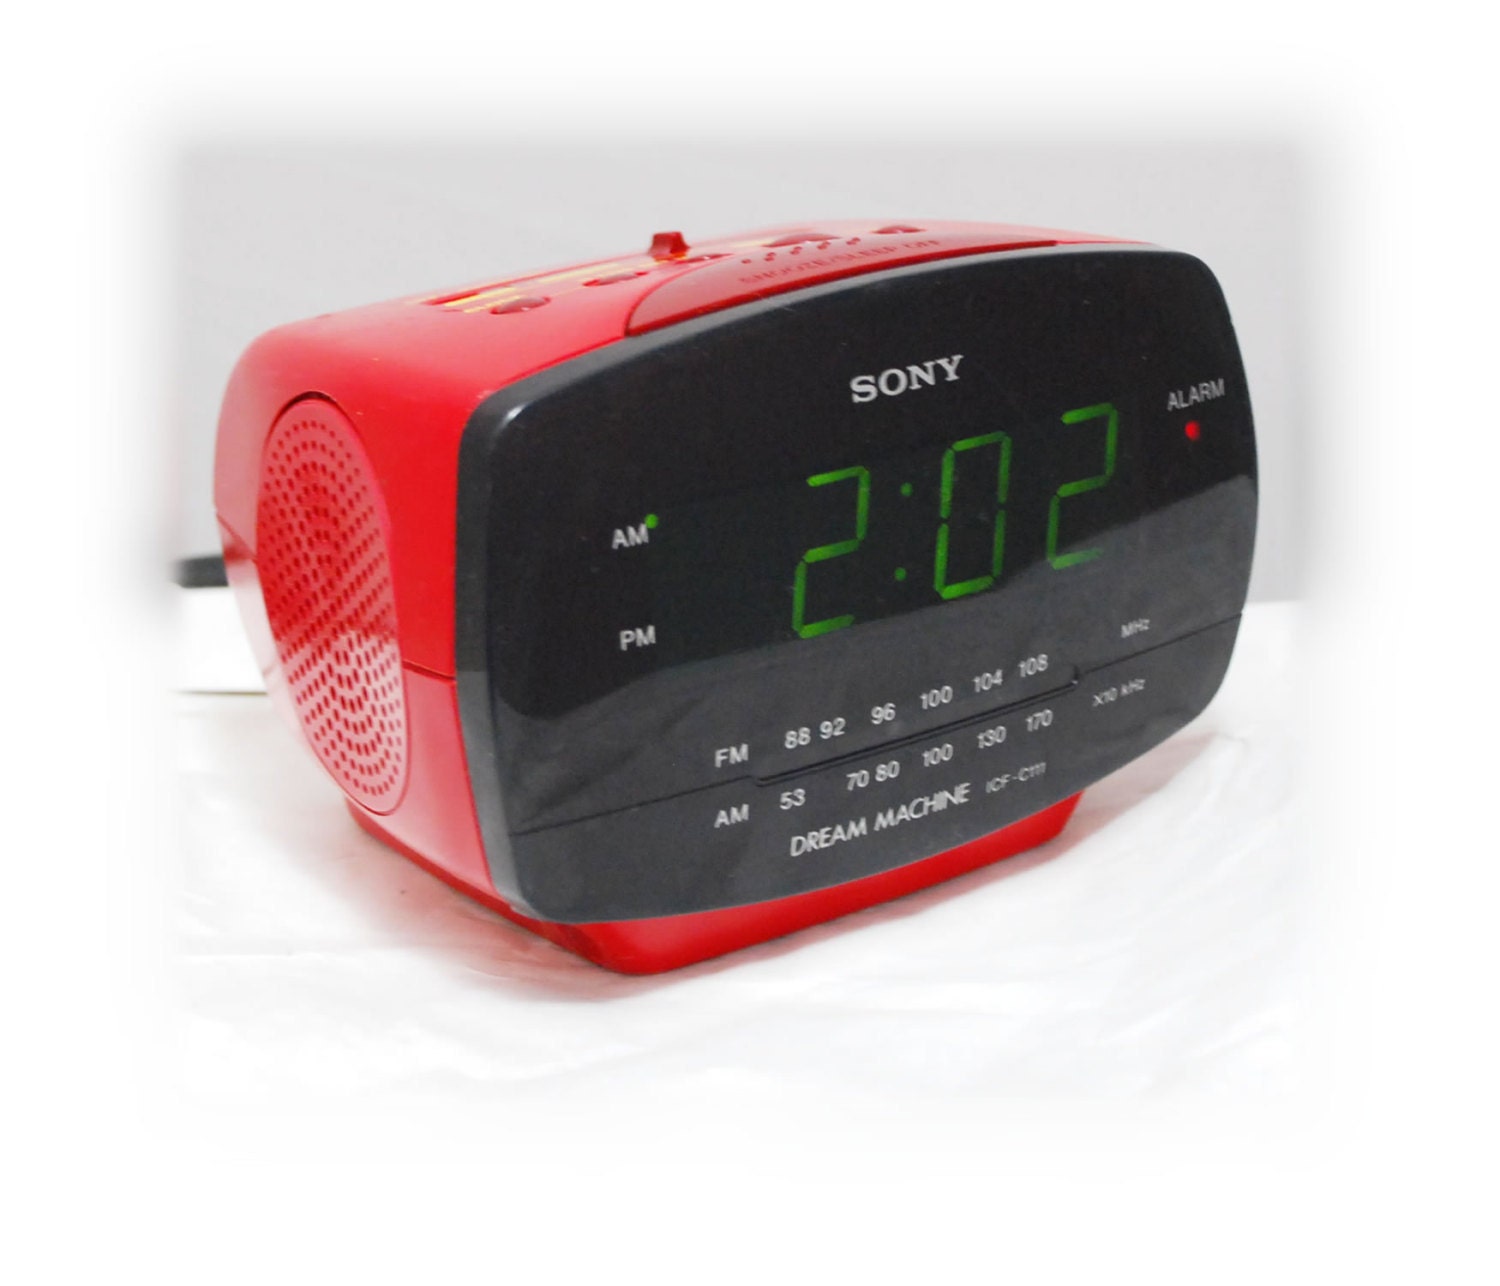 sony alarm clock instructions